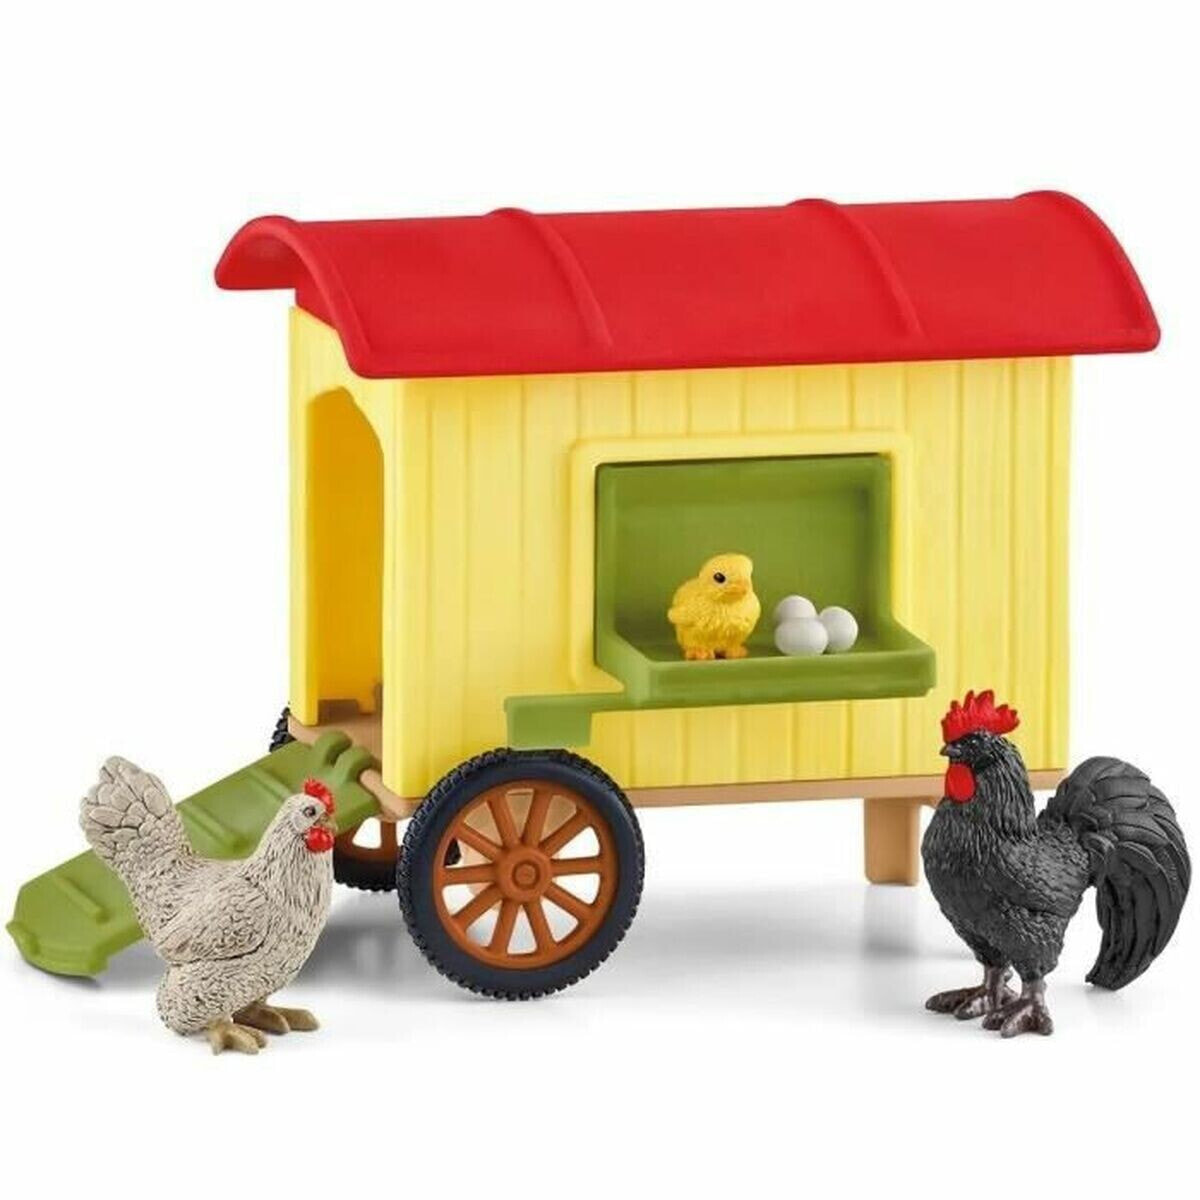 Toy set Schleich Mobile Chicken Coop Plastic